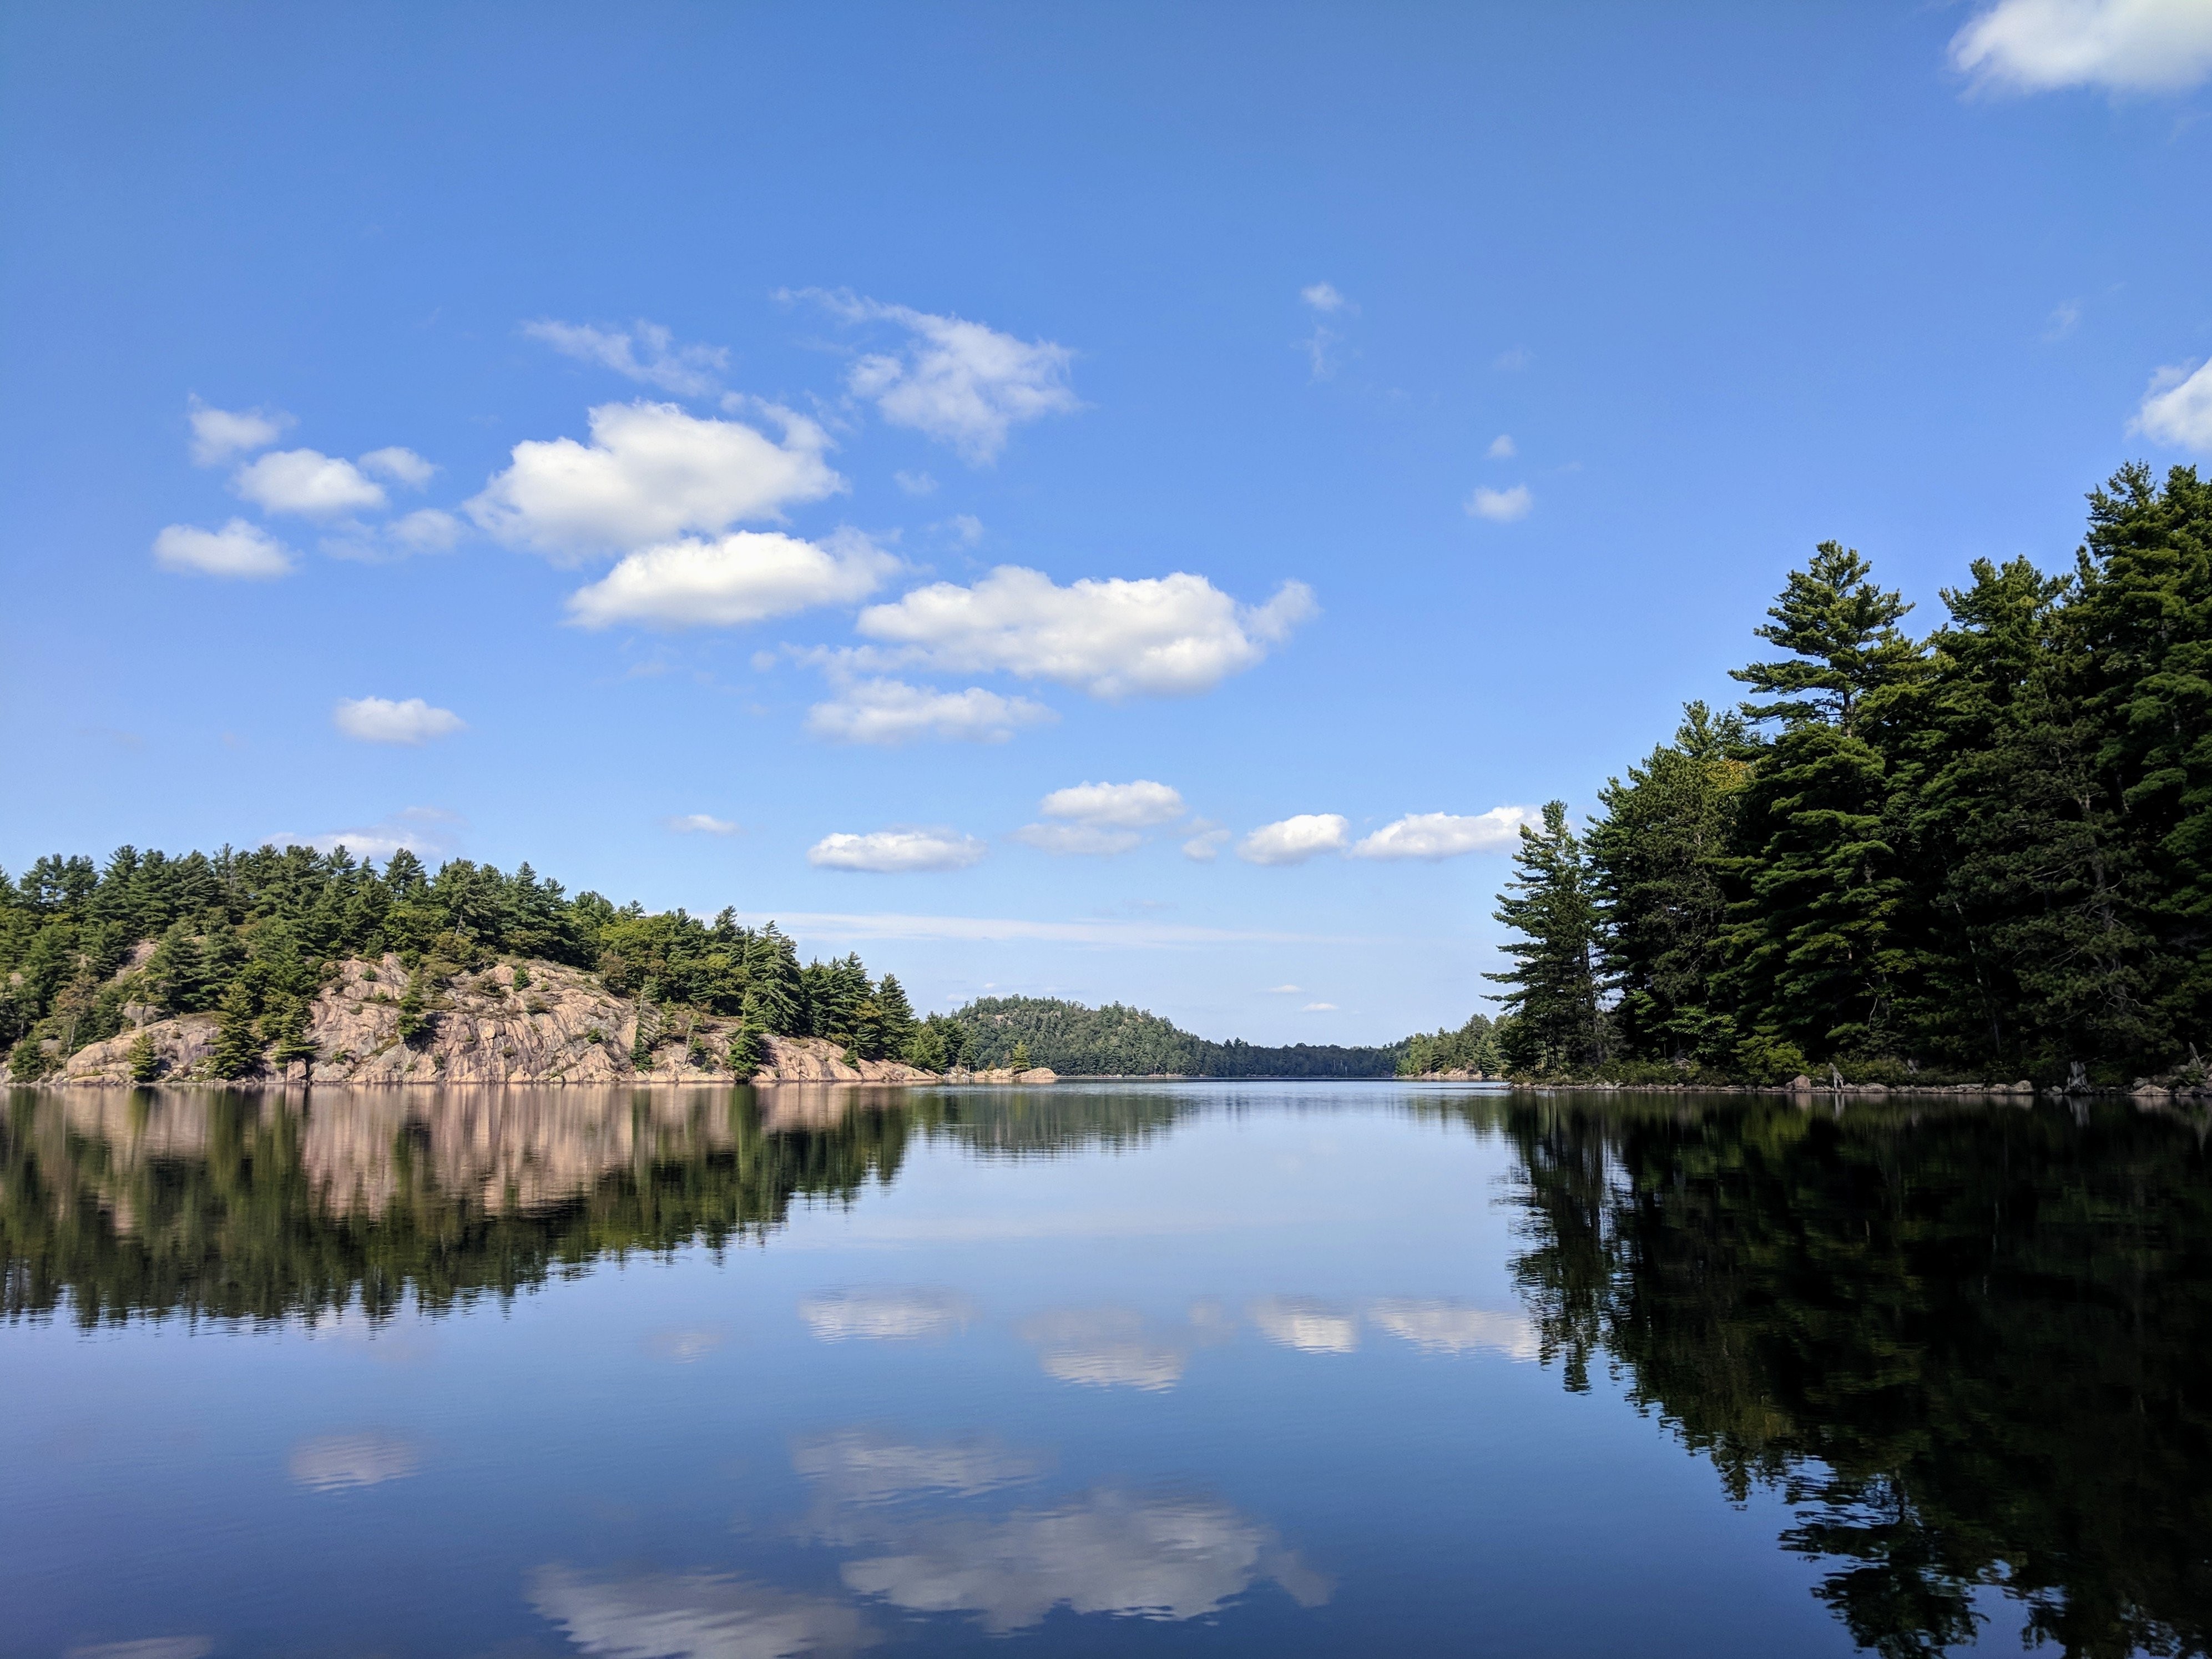 Les rochers et les arbres se reflètent sur la photo du lac calme